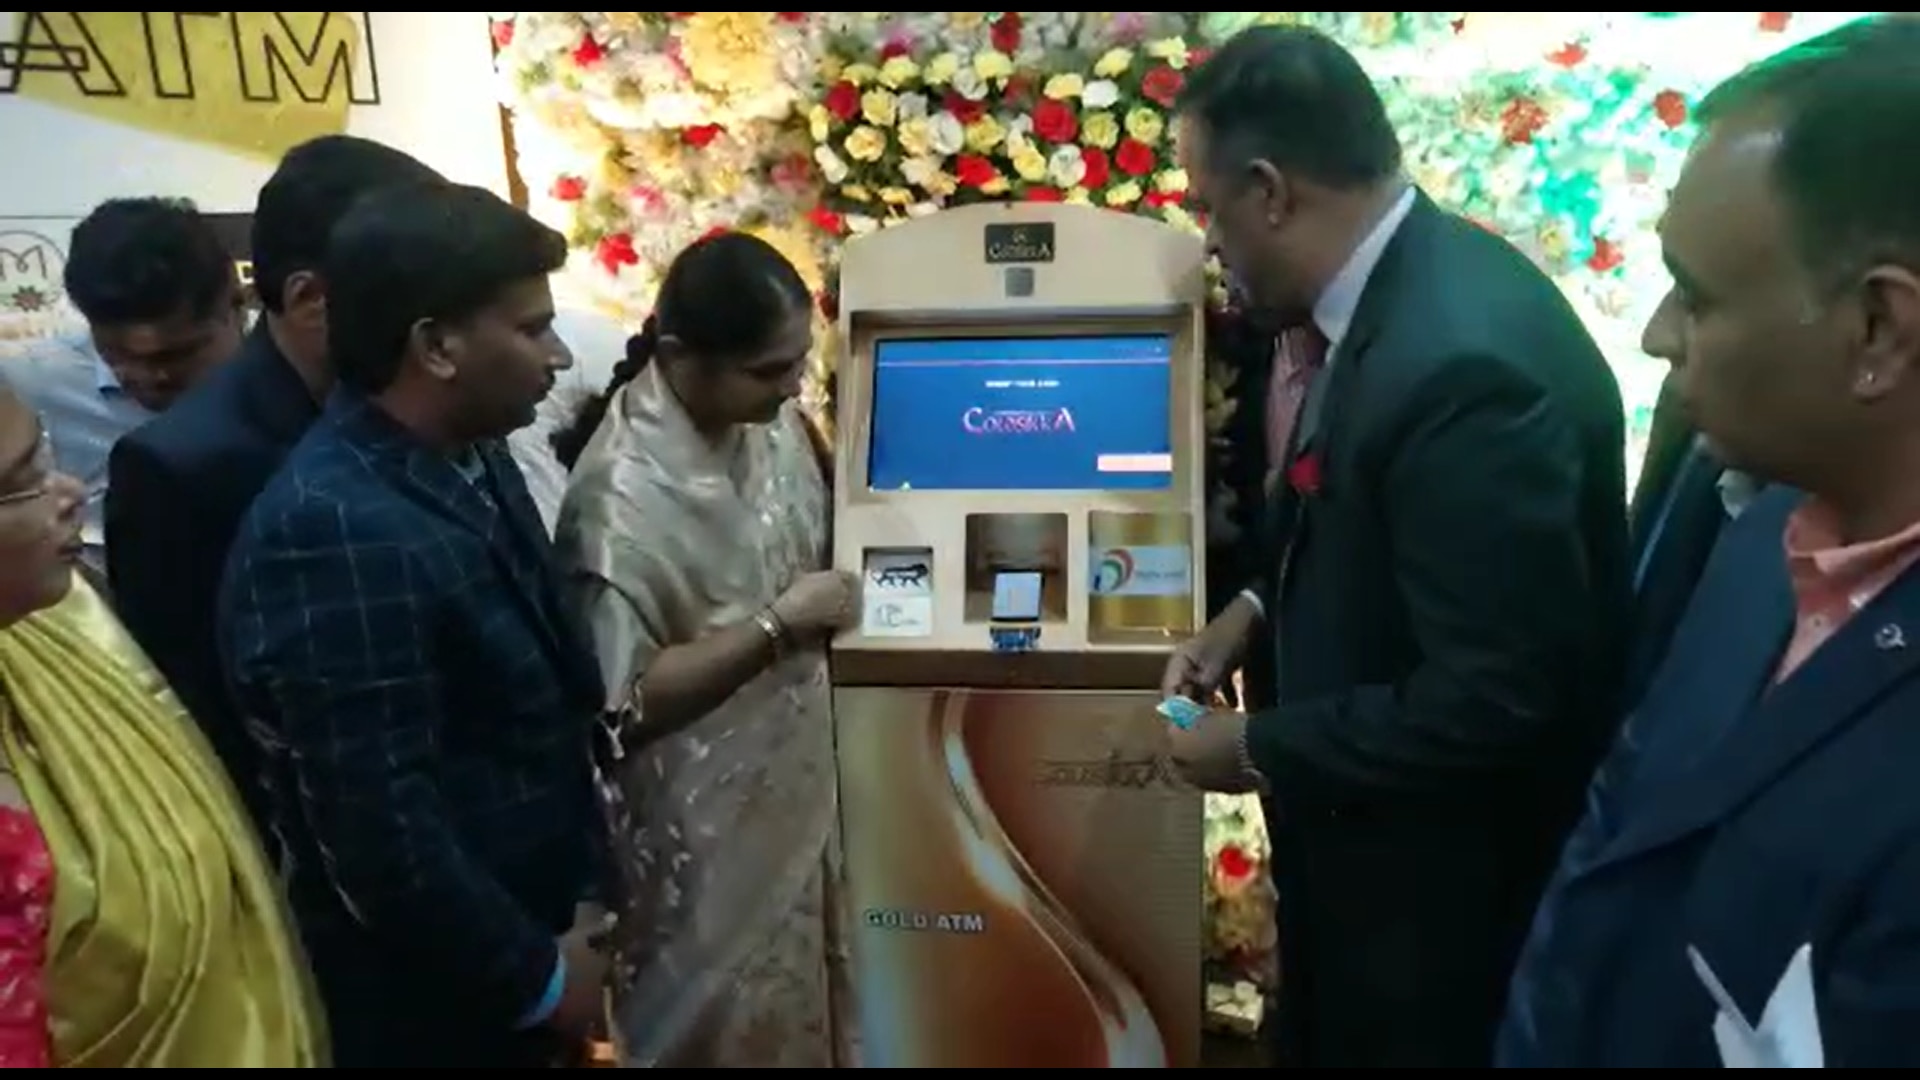 Gold ATM : ఈ ఏటీఎంలో బంగారం వస్తుంది, దేశంలోనే తొలి గోల్డ్ ఏటీఎం హైదరాబాద్ లో!